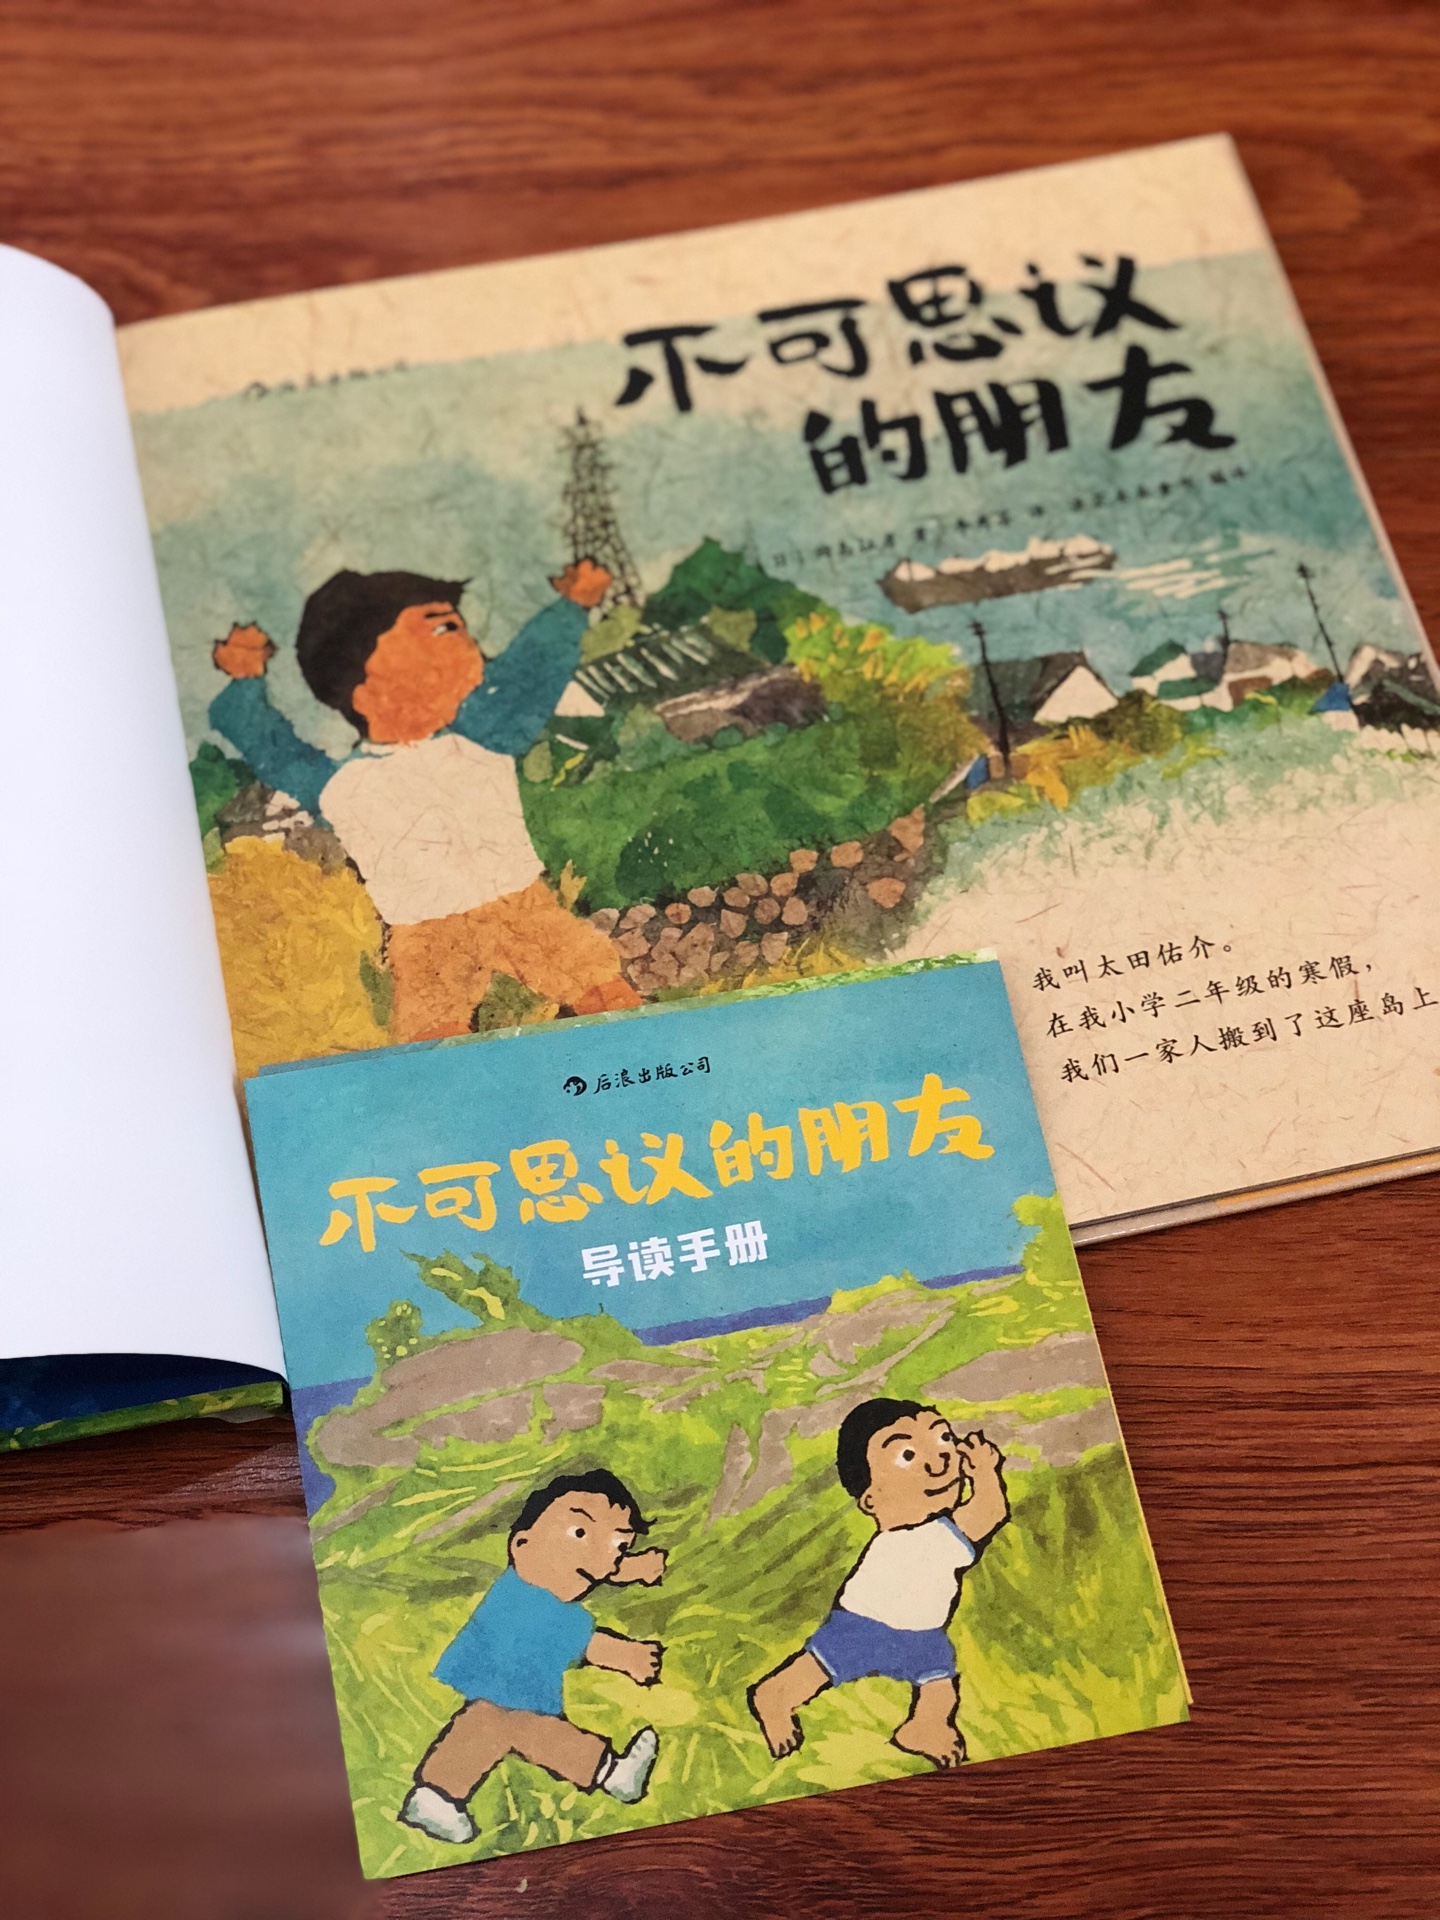 廖廖数语，讲述的是一个很温情的故事。孩子还没读，希望他读的时候，也会感受到这其中的温情。